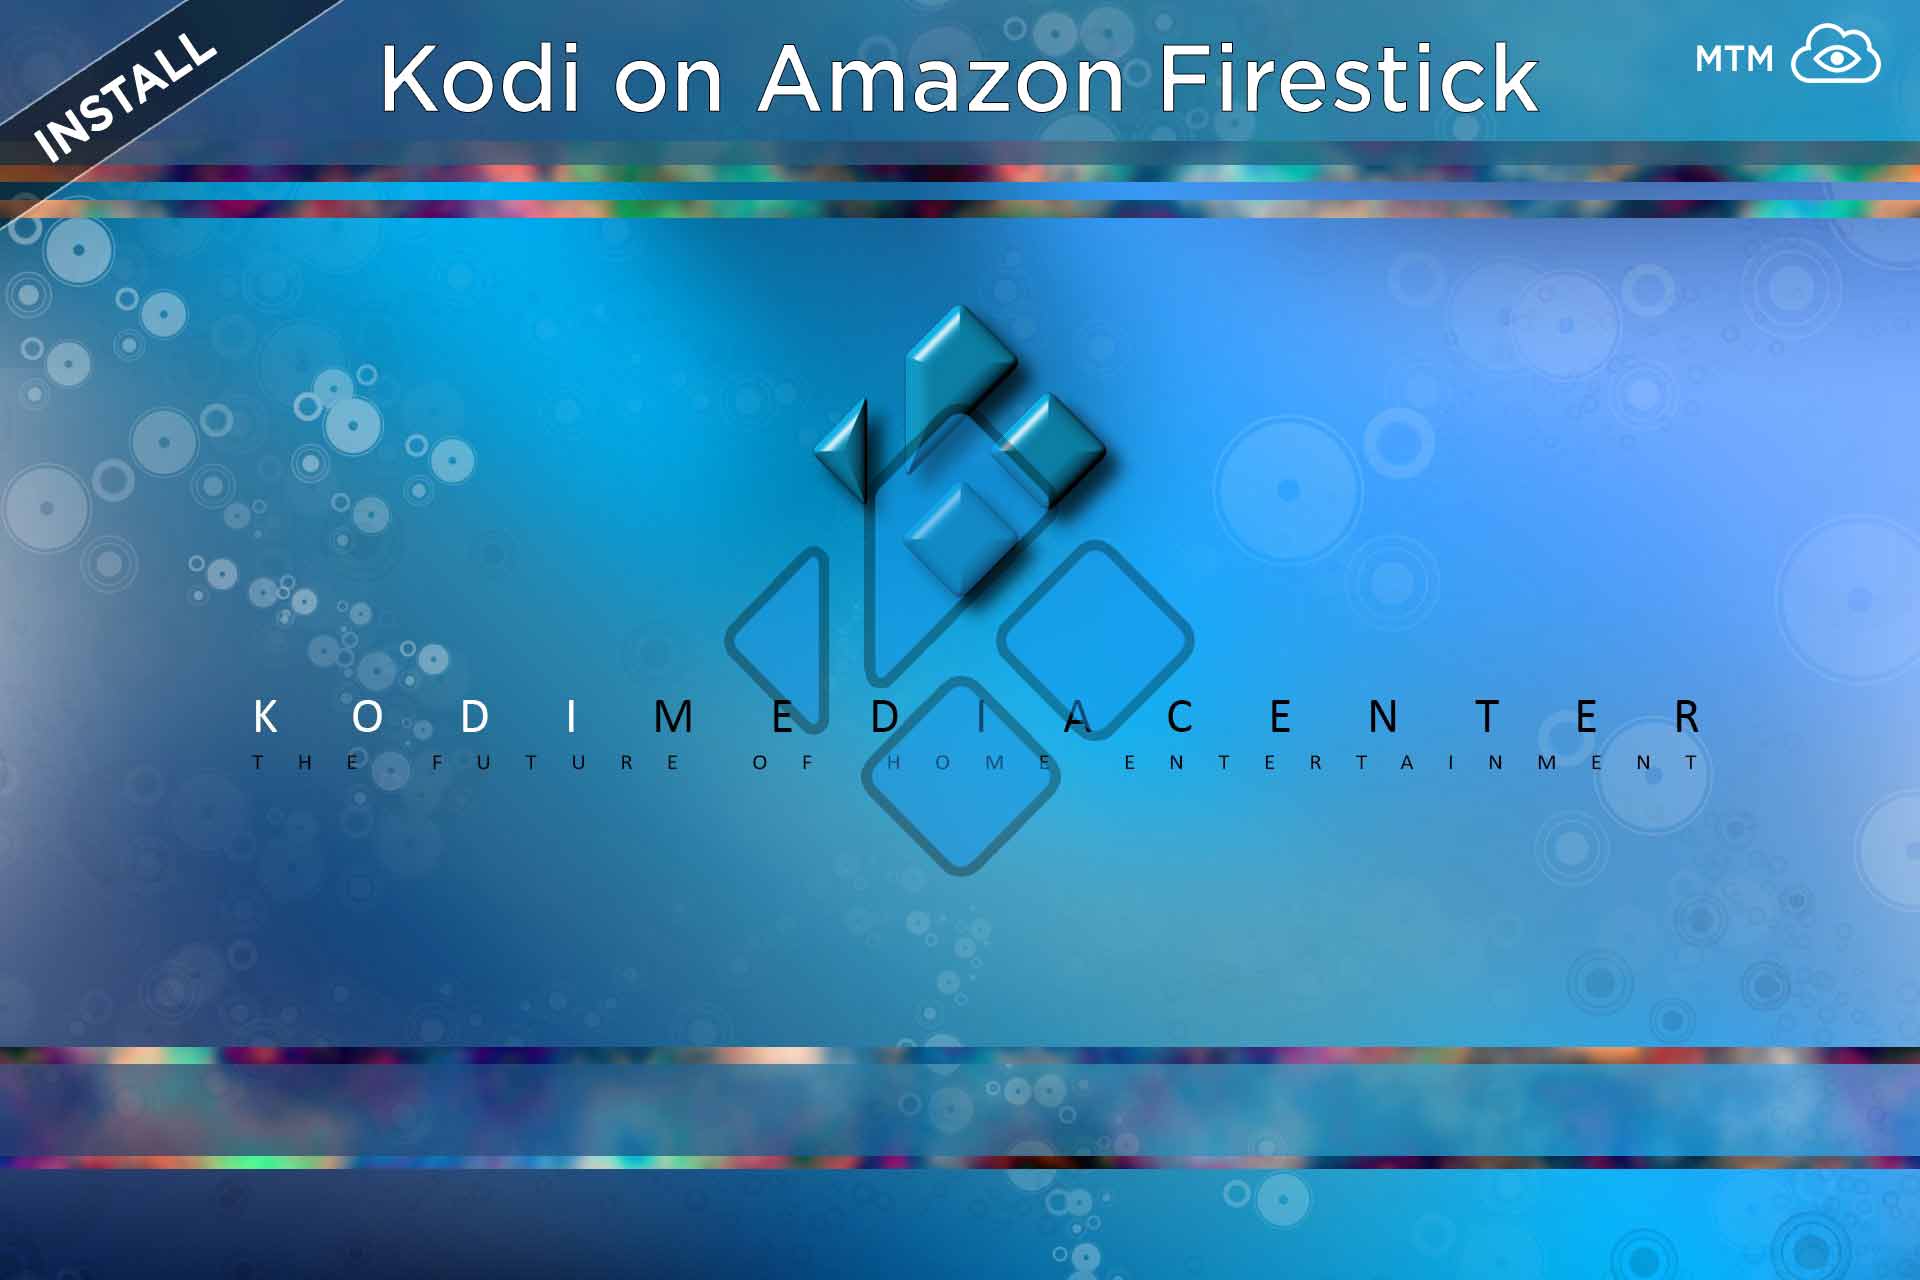 Nola instalatu Kodi Firestick-en edo Edozein Streaming gailutan
